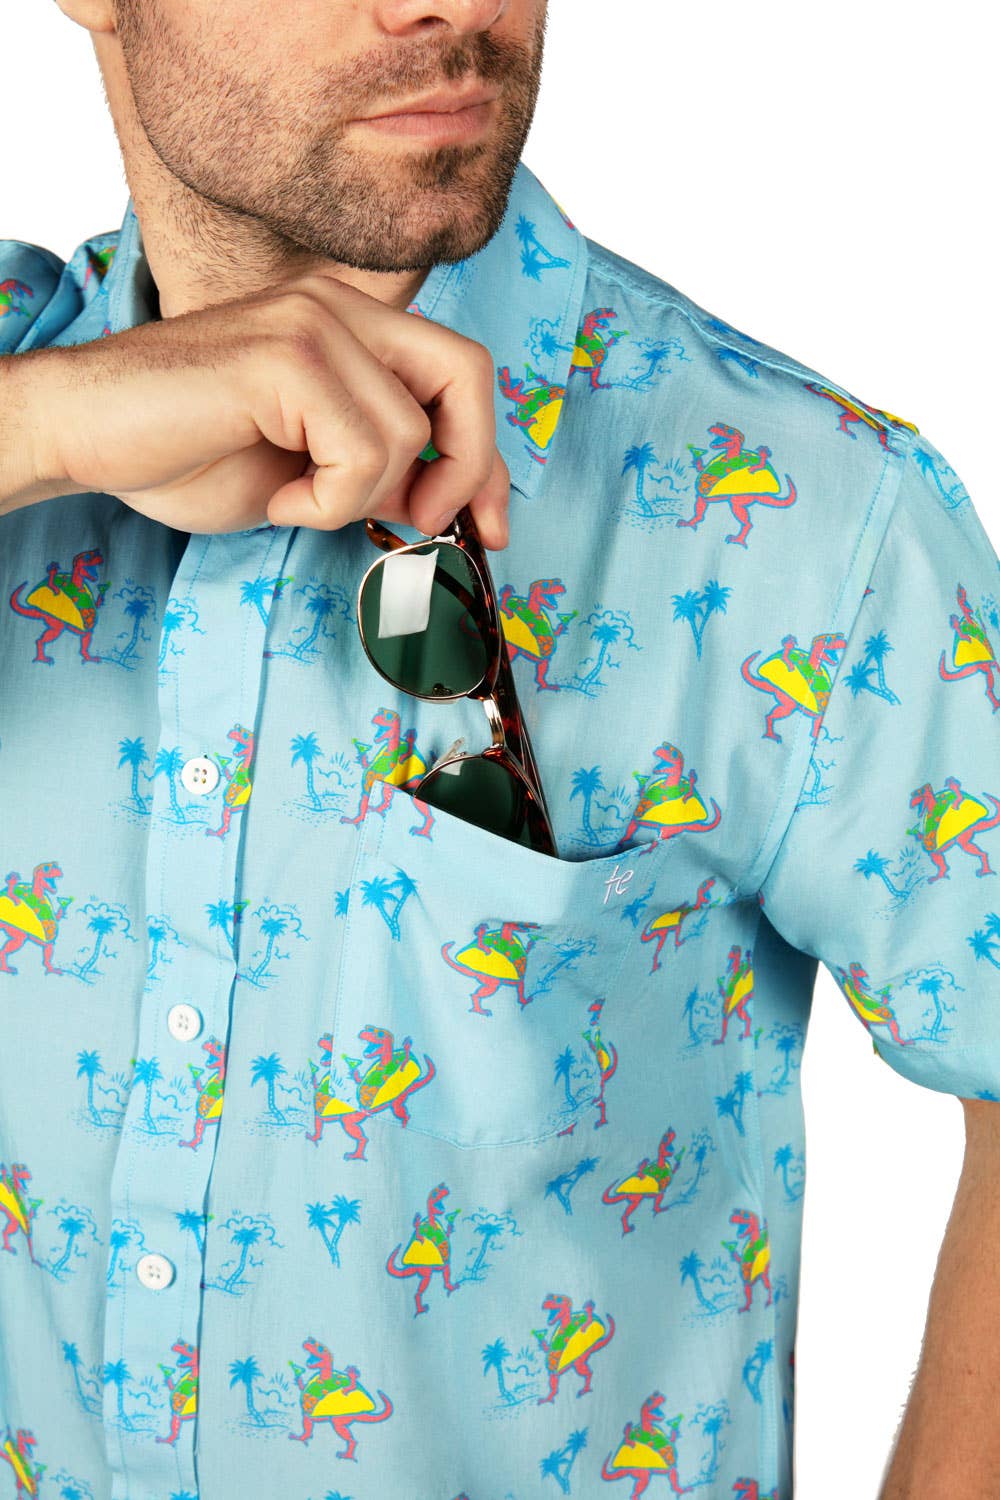 Tacosaurus Hawaiian Shirt